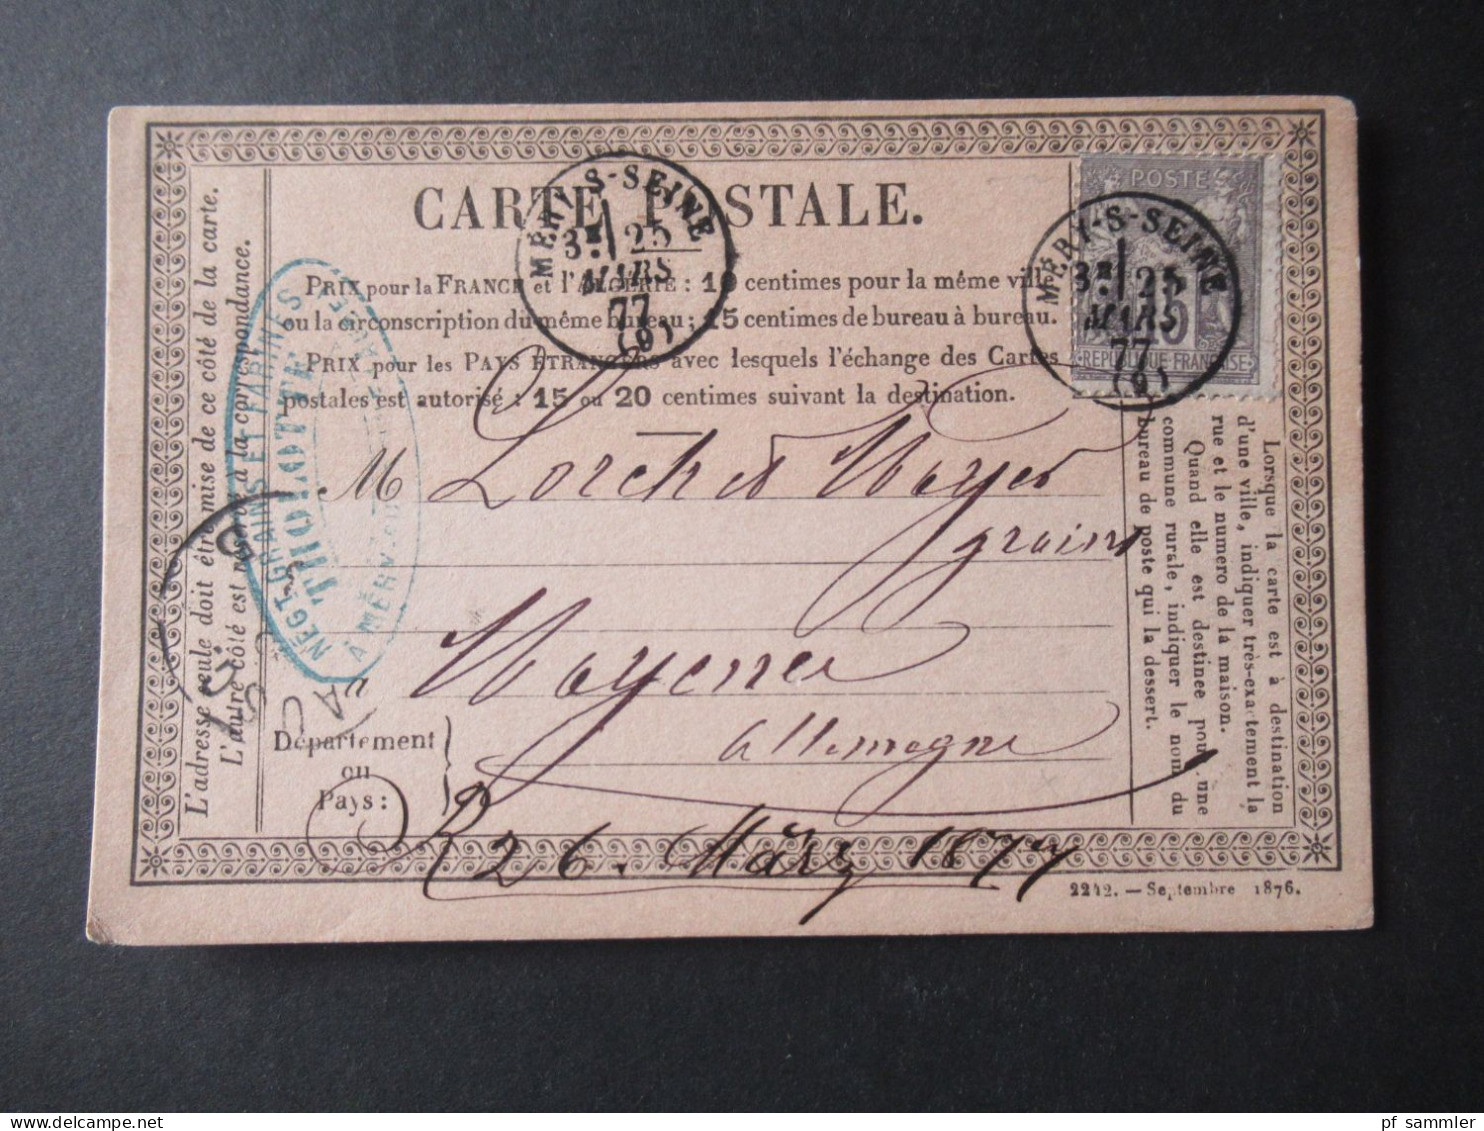 Frankreich 1870er Jahre Carte Postale / PK toller Posten mit 80 Stück!! Überwiegend frankiert und ins Ausland gesendet!